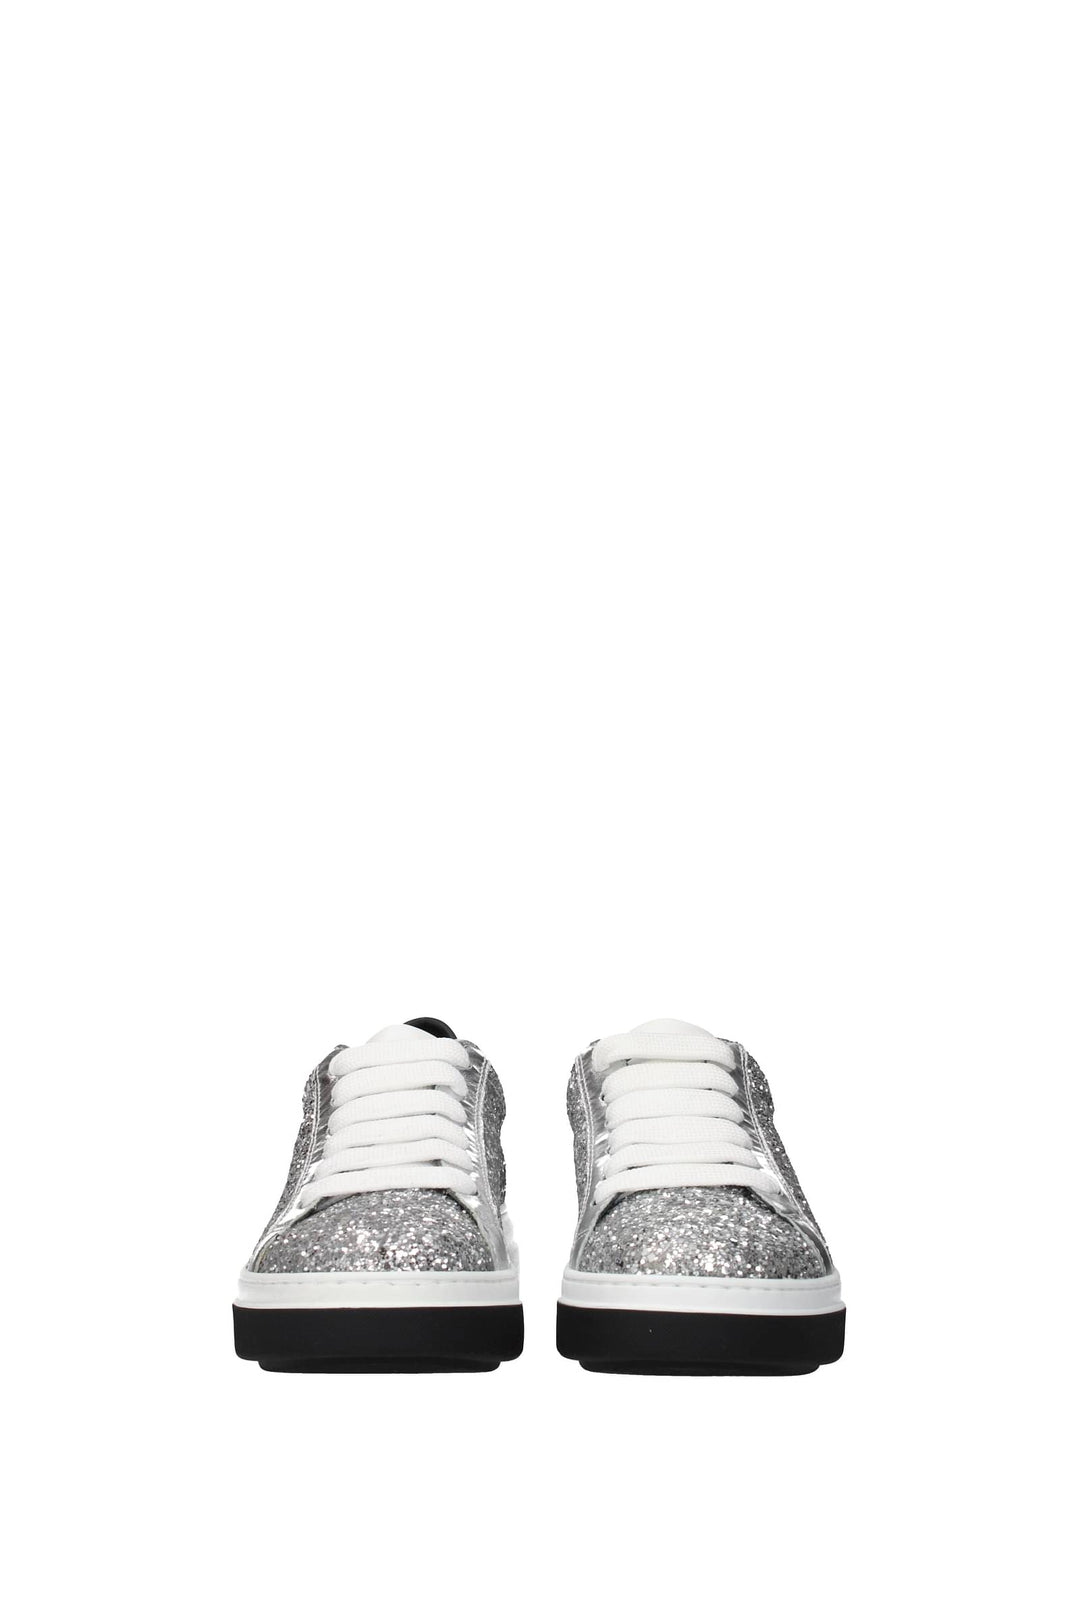 Sneakers Bumper Glitter Argento - Dsquared2 - Donna